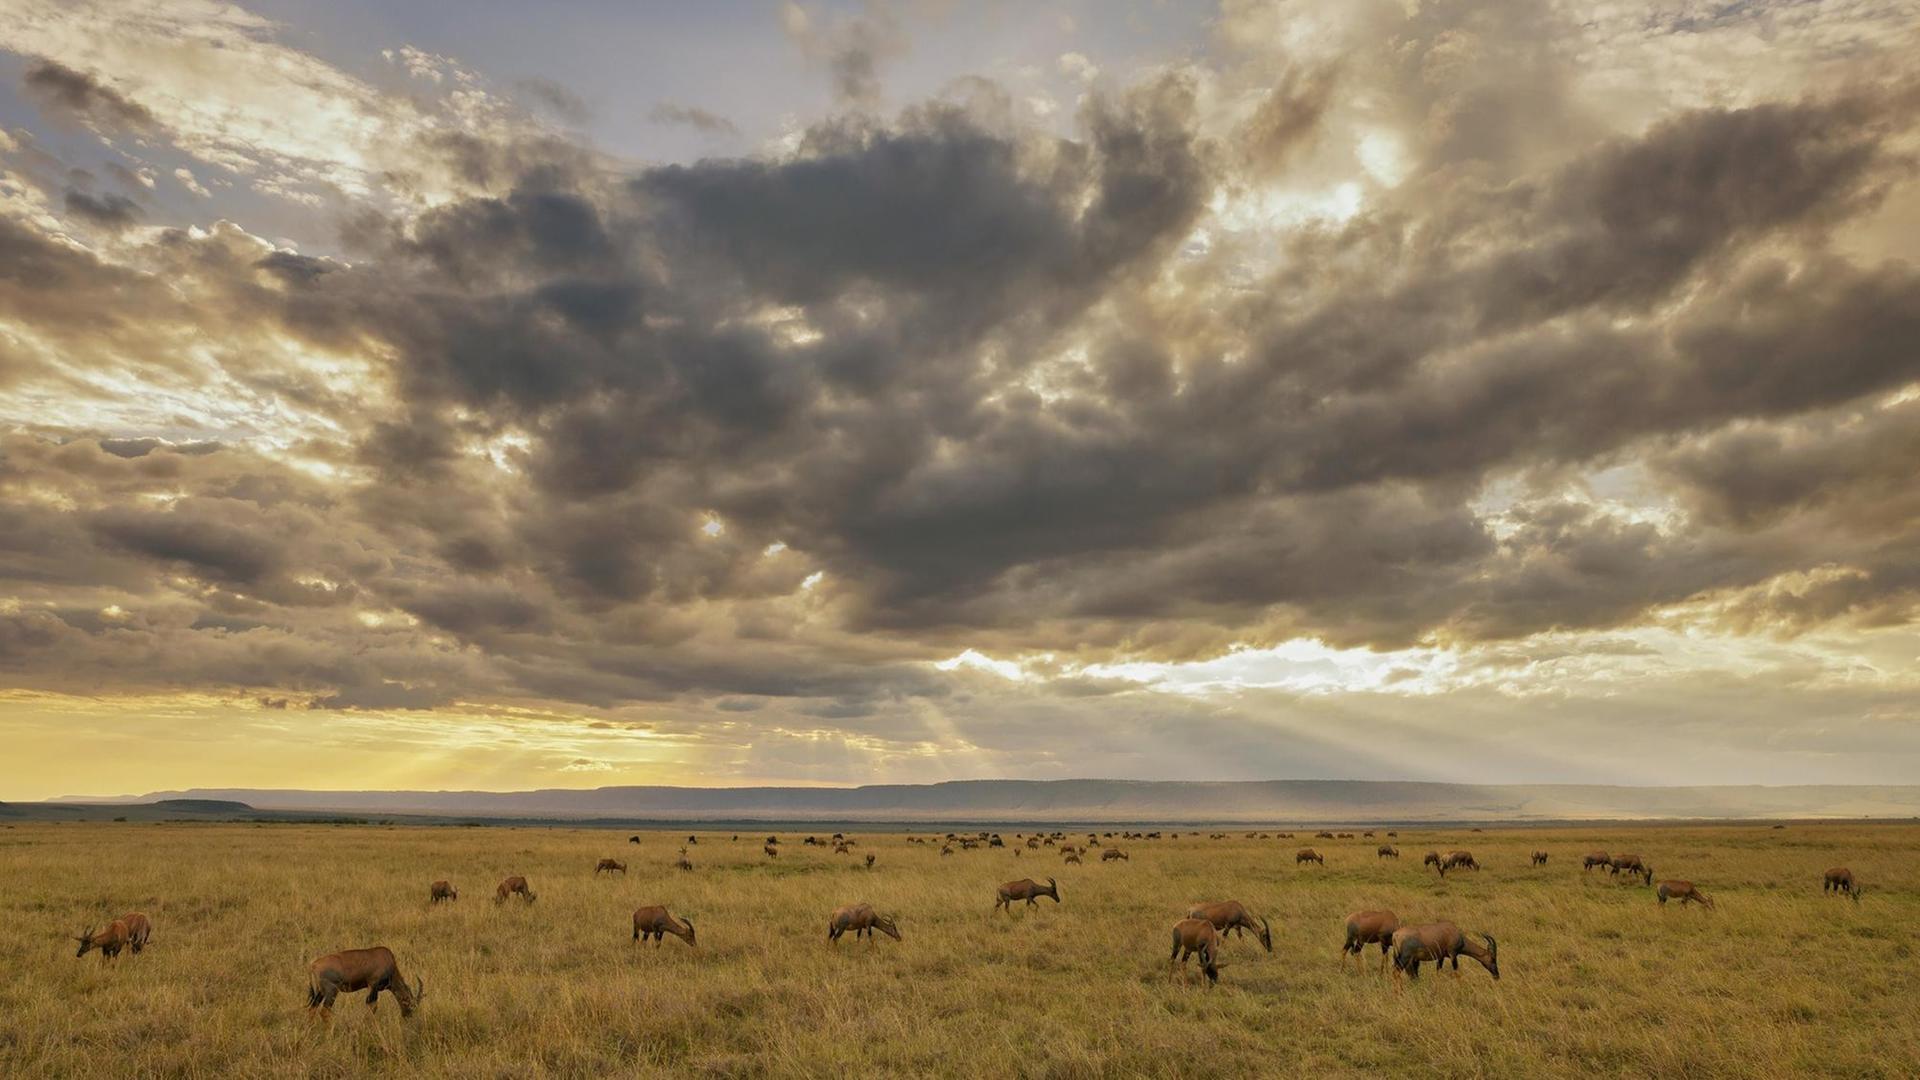 Tropisches Grasland: Savanne (Kenia, Masai Mara) Unzählige Huftiere bewohnen die afrikanische Grassavanne. Topis, Streifen-Gnus und Kaffernbüffel gehören zu den häufigsten Arten.